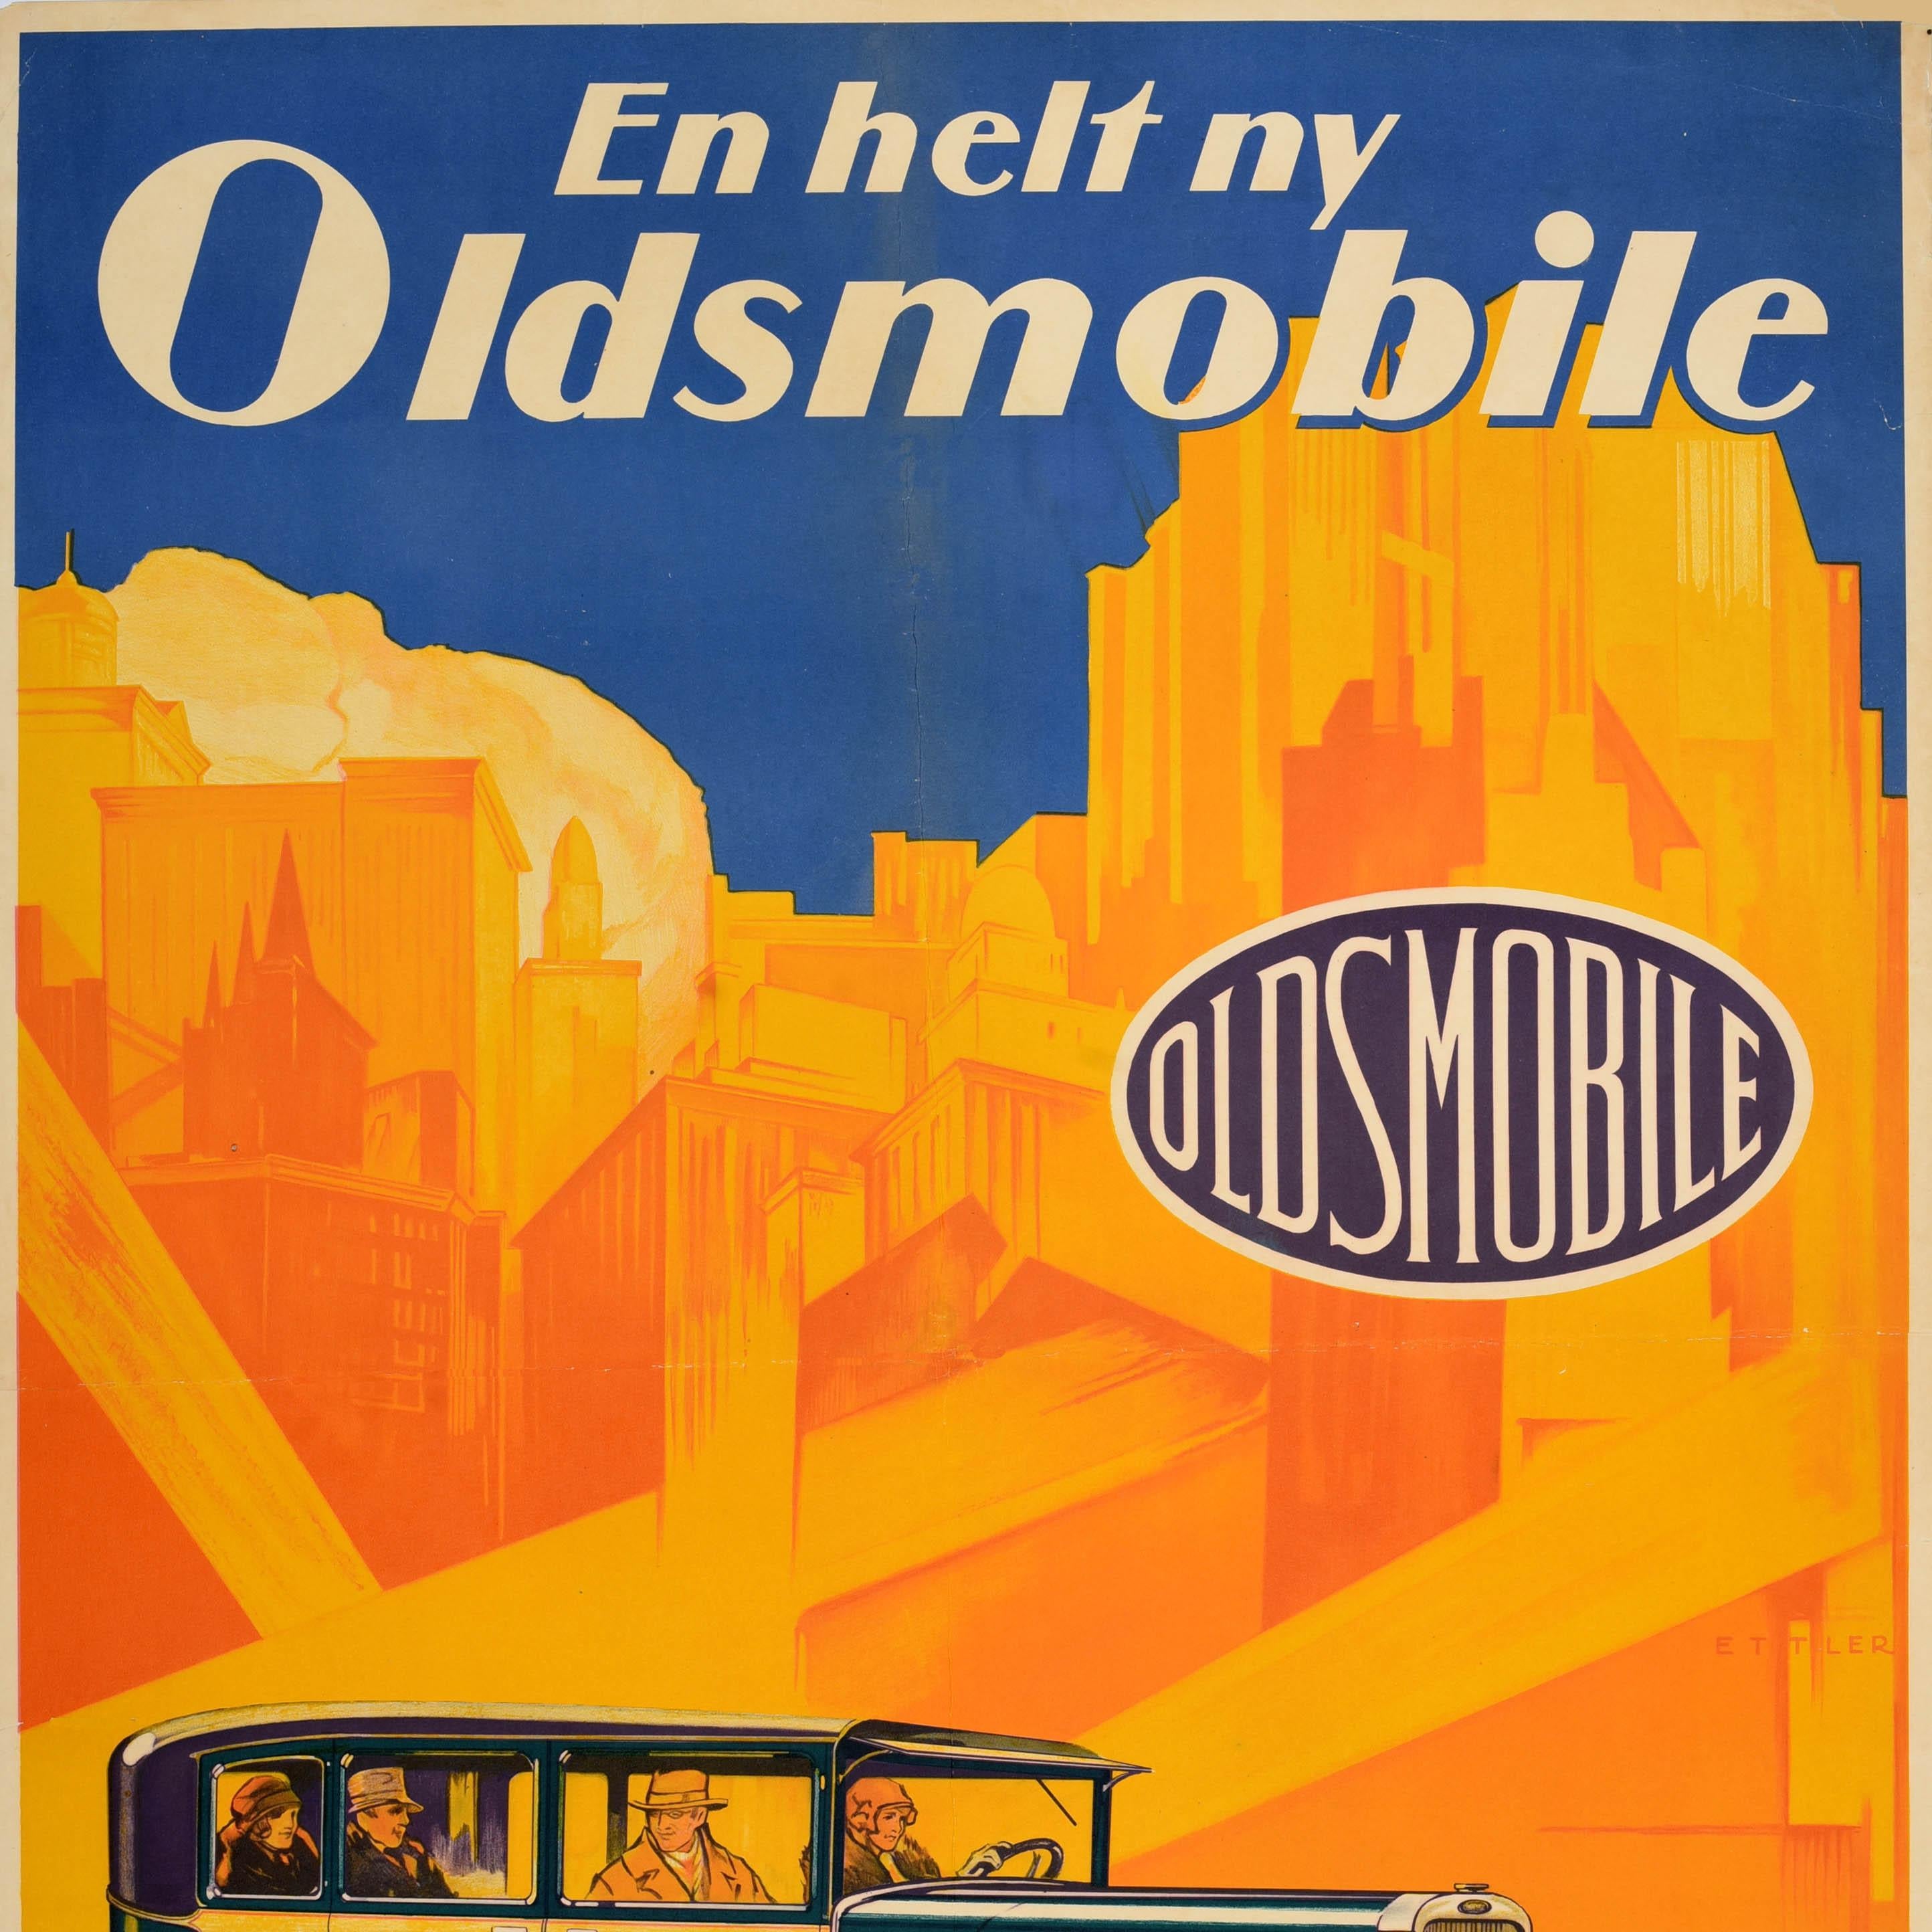 Original Vintage Car Advertising Poster Oldsmobile Metropolis General Motors - Orange Print by Unknown